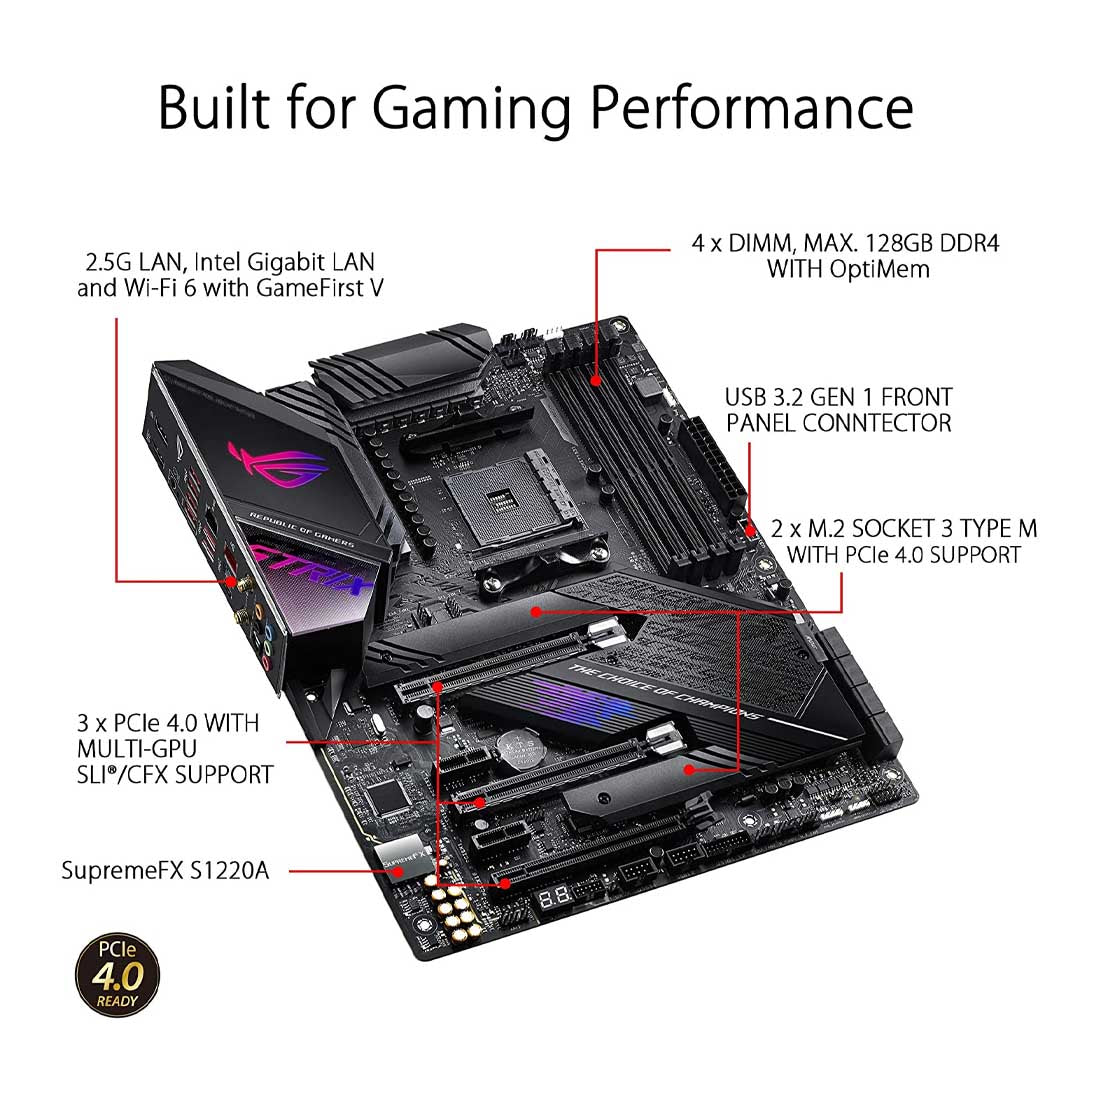 ASUS ROG STRIX X570-E AMD AM4 ATX गेमिंग मदरबोर्ड PCIe 4.0 और डुअल M.2 के साथ